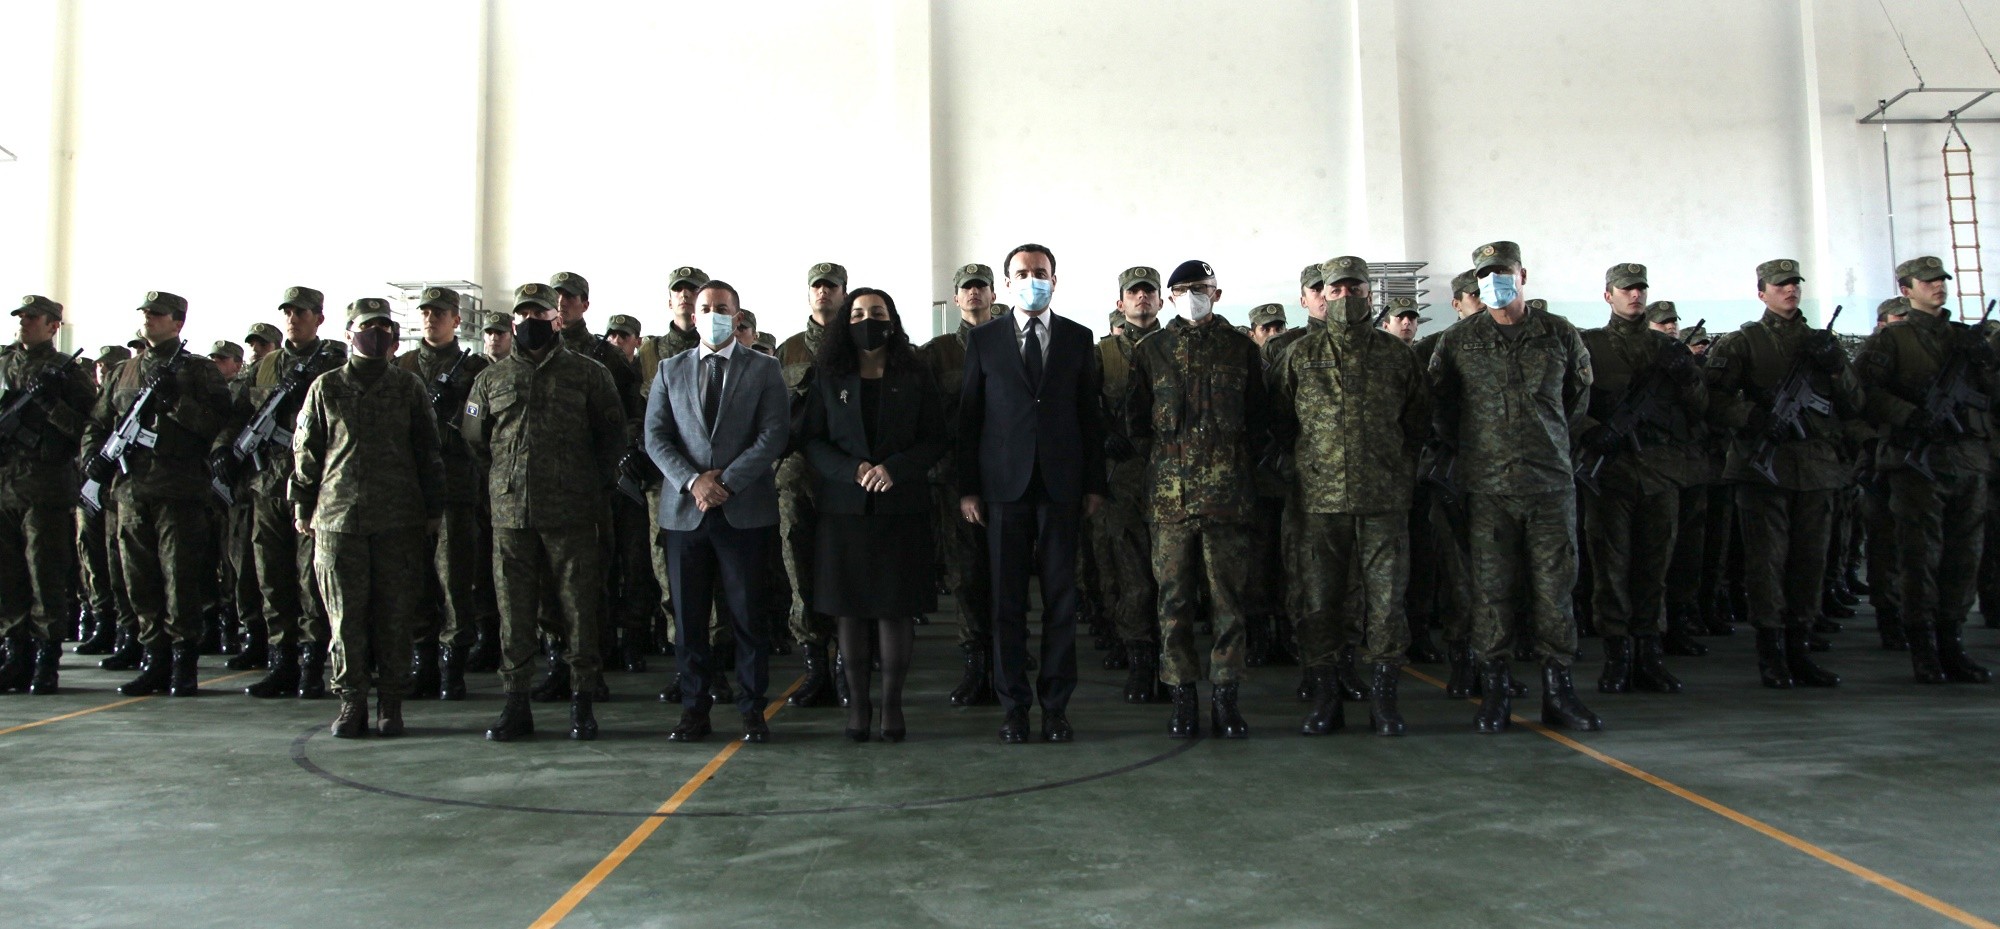 Forcës së Sigurisë së Kosovës sot i janë shtuar edhe 190 rekrutë të rinj